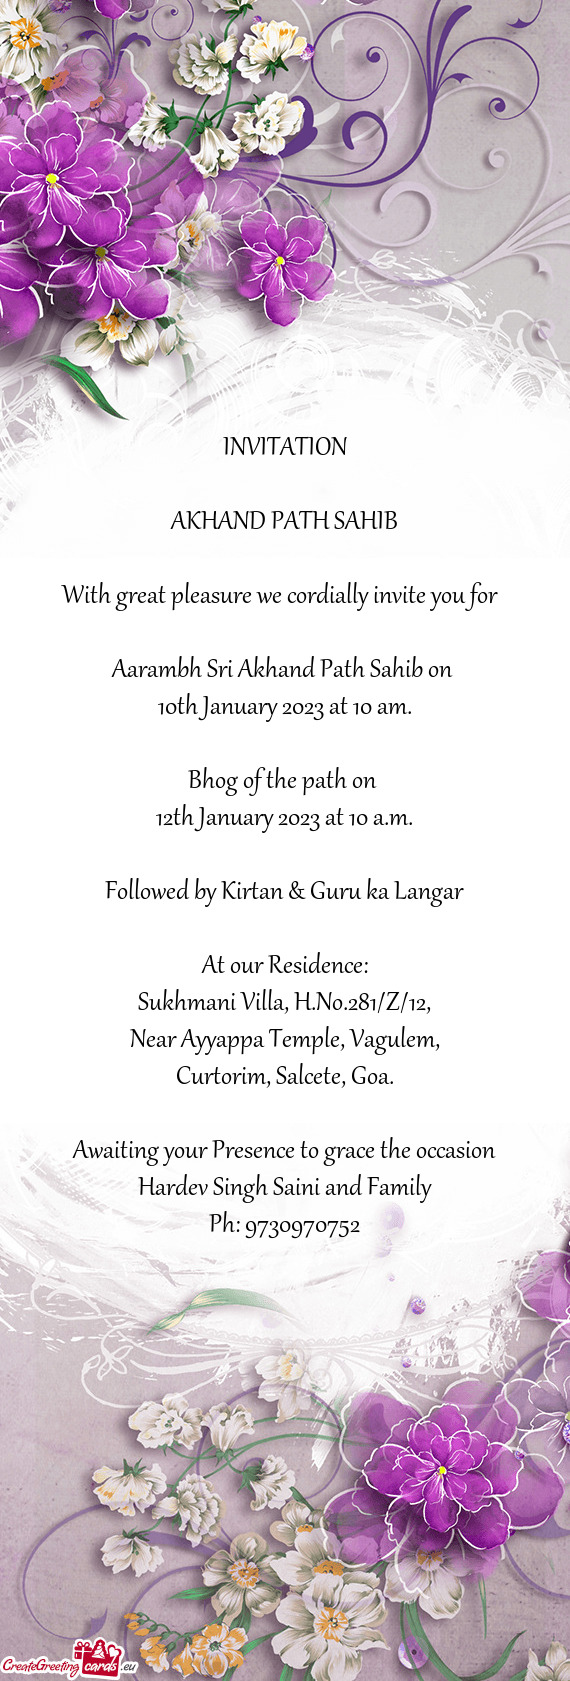 Aarambh Sri Akhand Path Sahib on